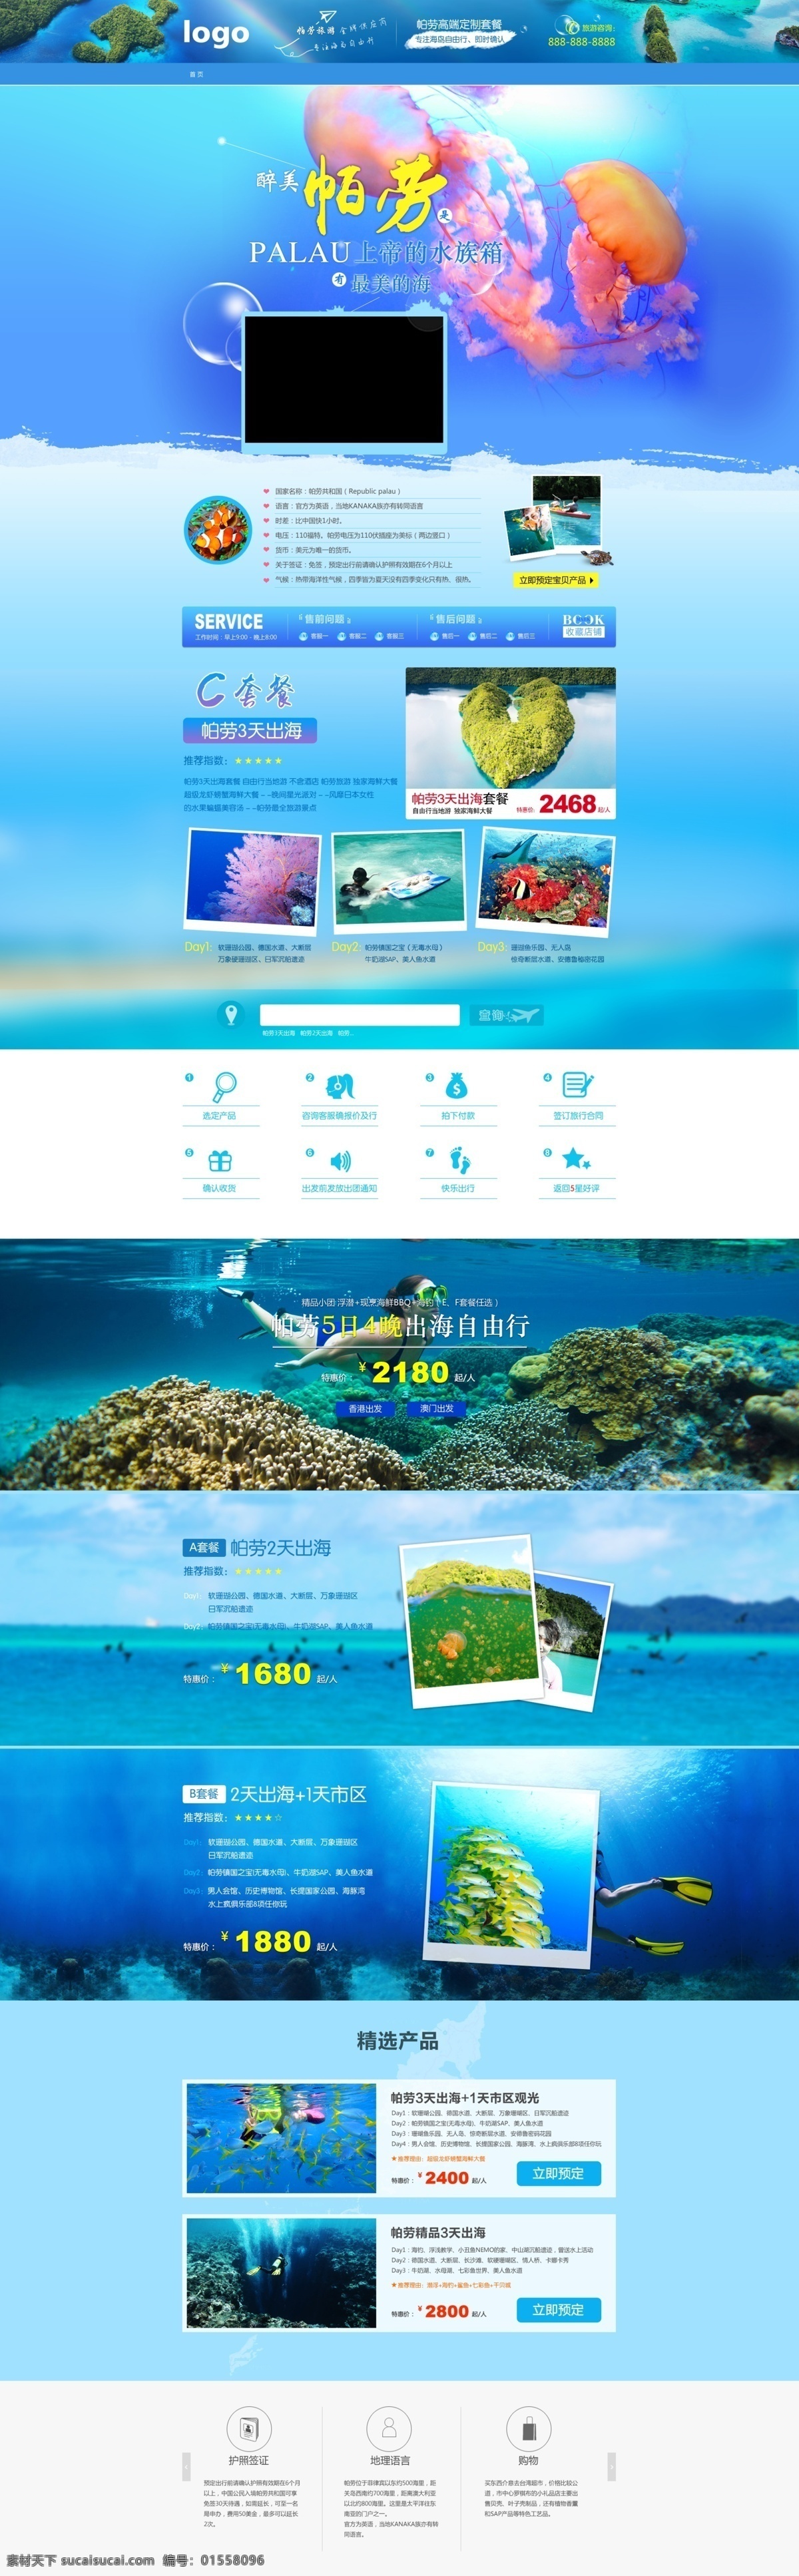 旅游首页 海岛旅游 帕劳旅游 马尔代夫旅游 青色 天蓝色